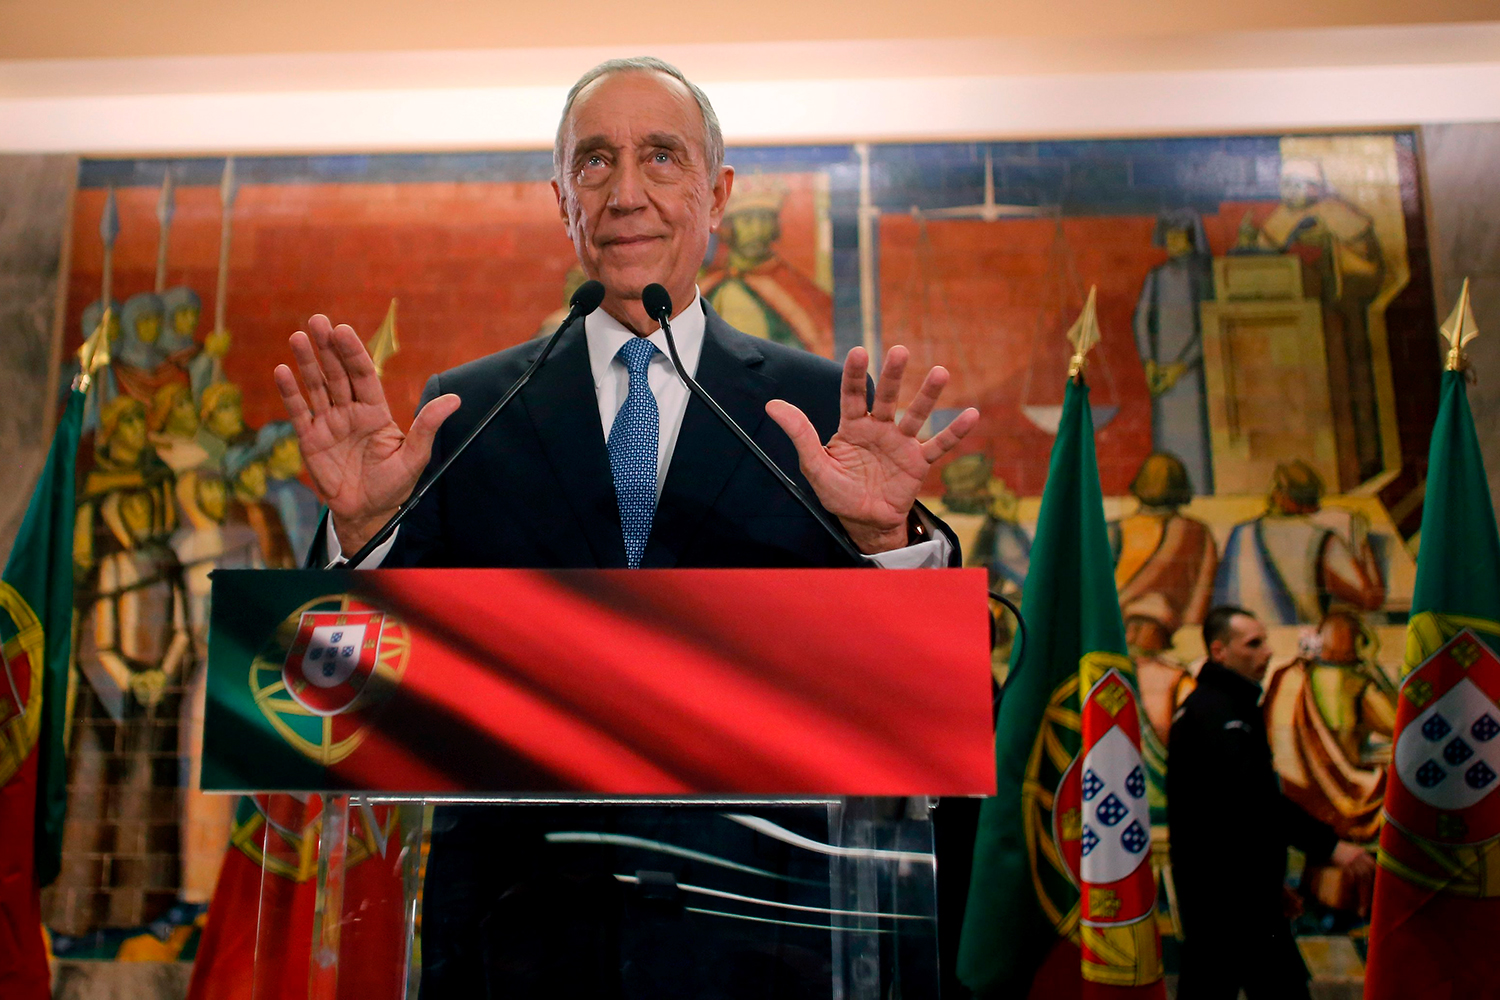 El moderado ‘profesor Marcelo’ de Sousa se hace con la presidencia en Portugal